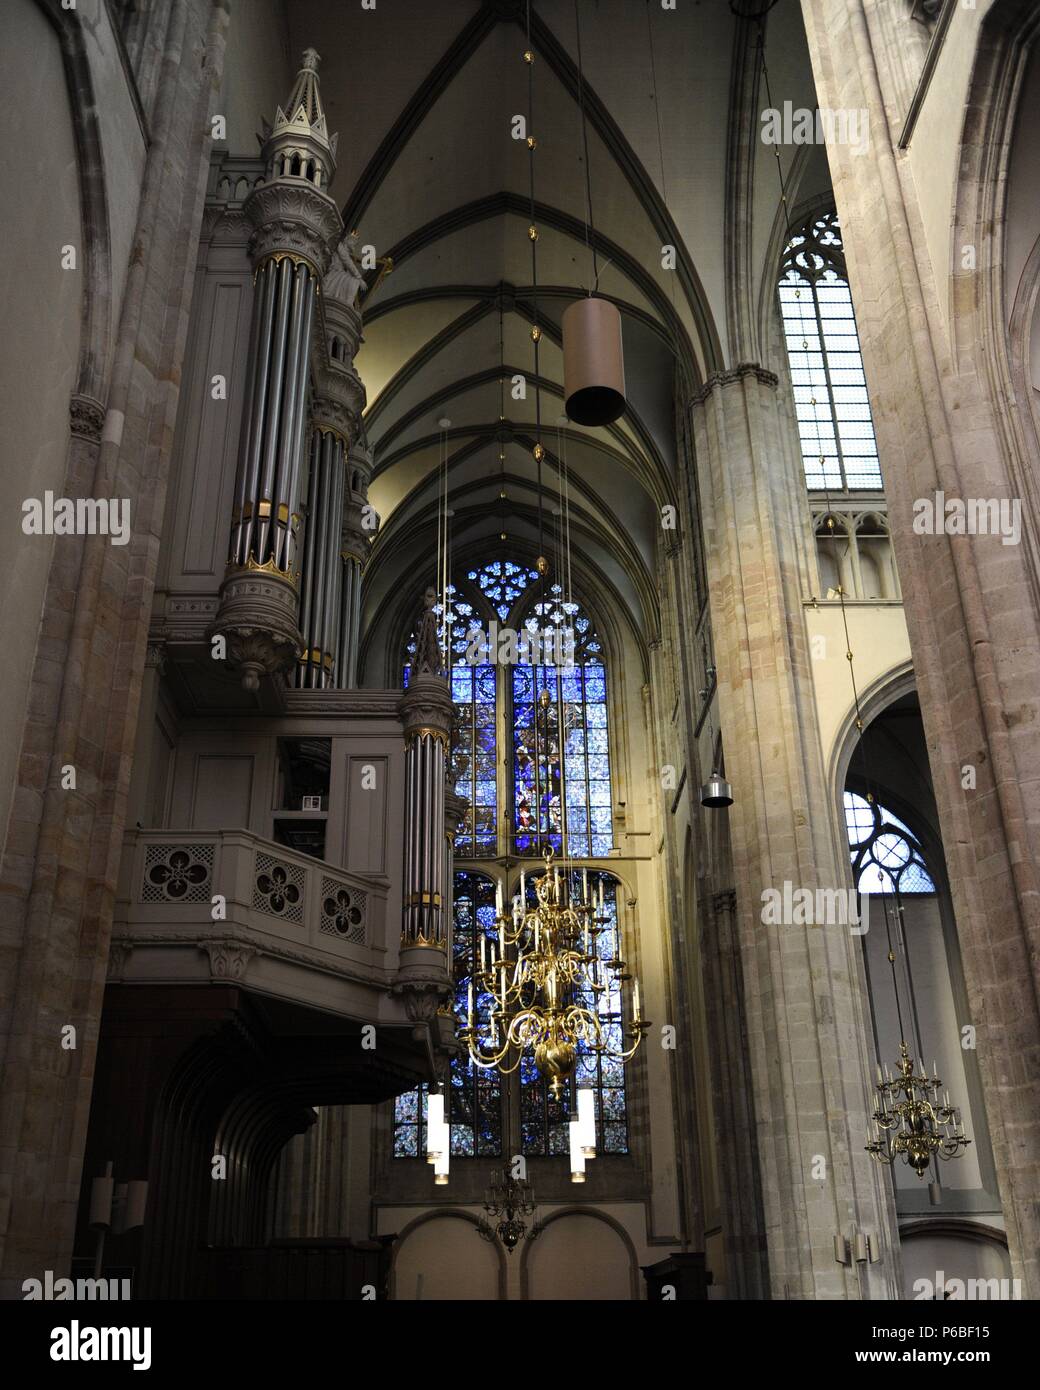 Países Bajos. Utrecht. La Catedral de San Martín. Edad media. De estilo gótico francés. Iglesia Protestante desde 1580. En el interior. Foto de stock